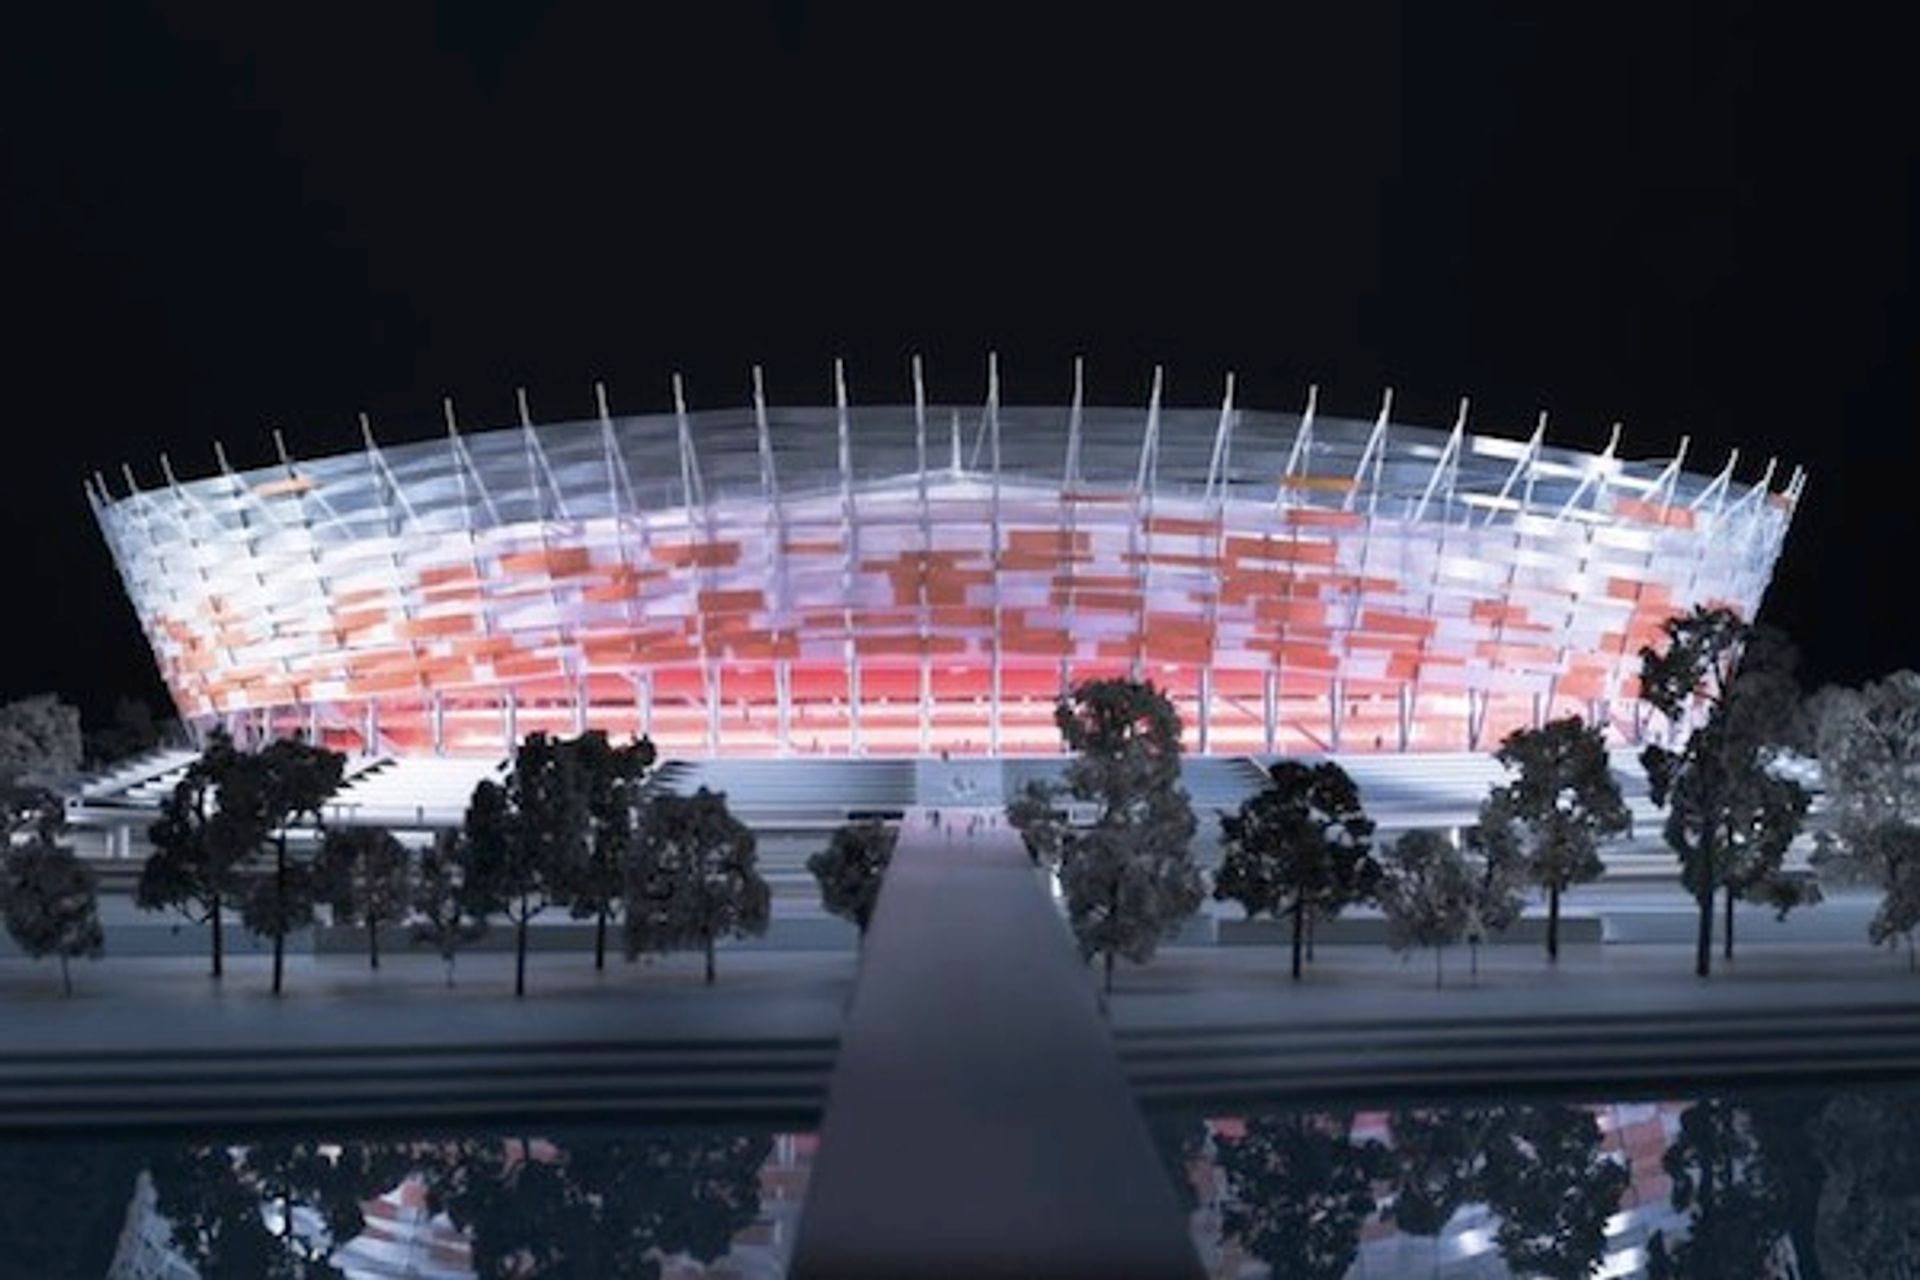 Stadion Narodowy w Warszawie niekwestionowanym zwycięzcą spośród polskich projektów nagrodzonych w konkursie CEEQA 2012 INDUSTRY AWARDS